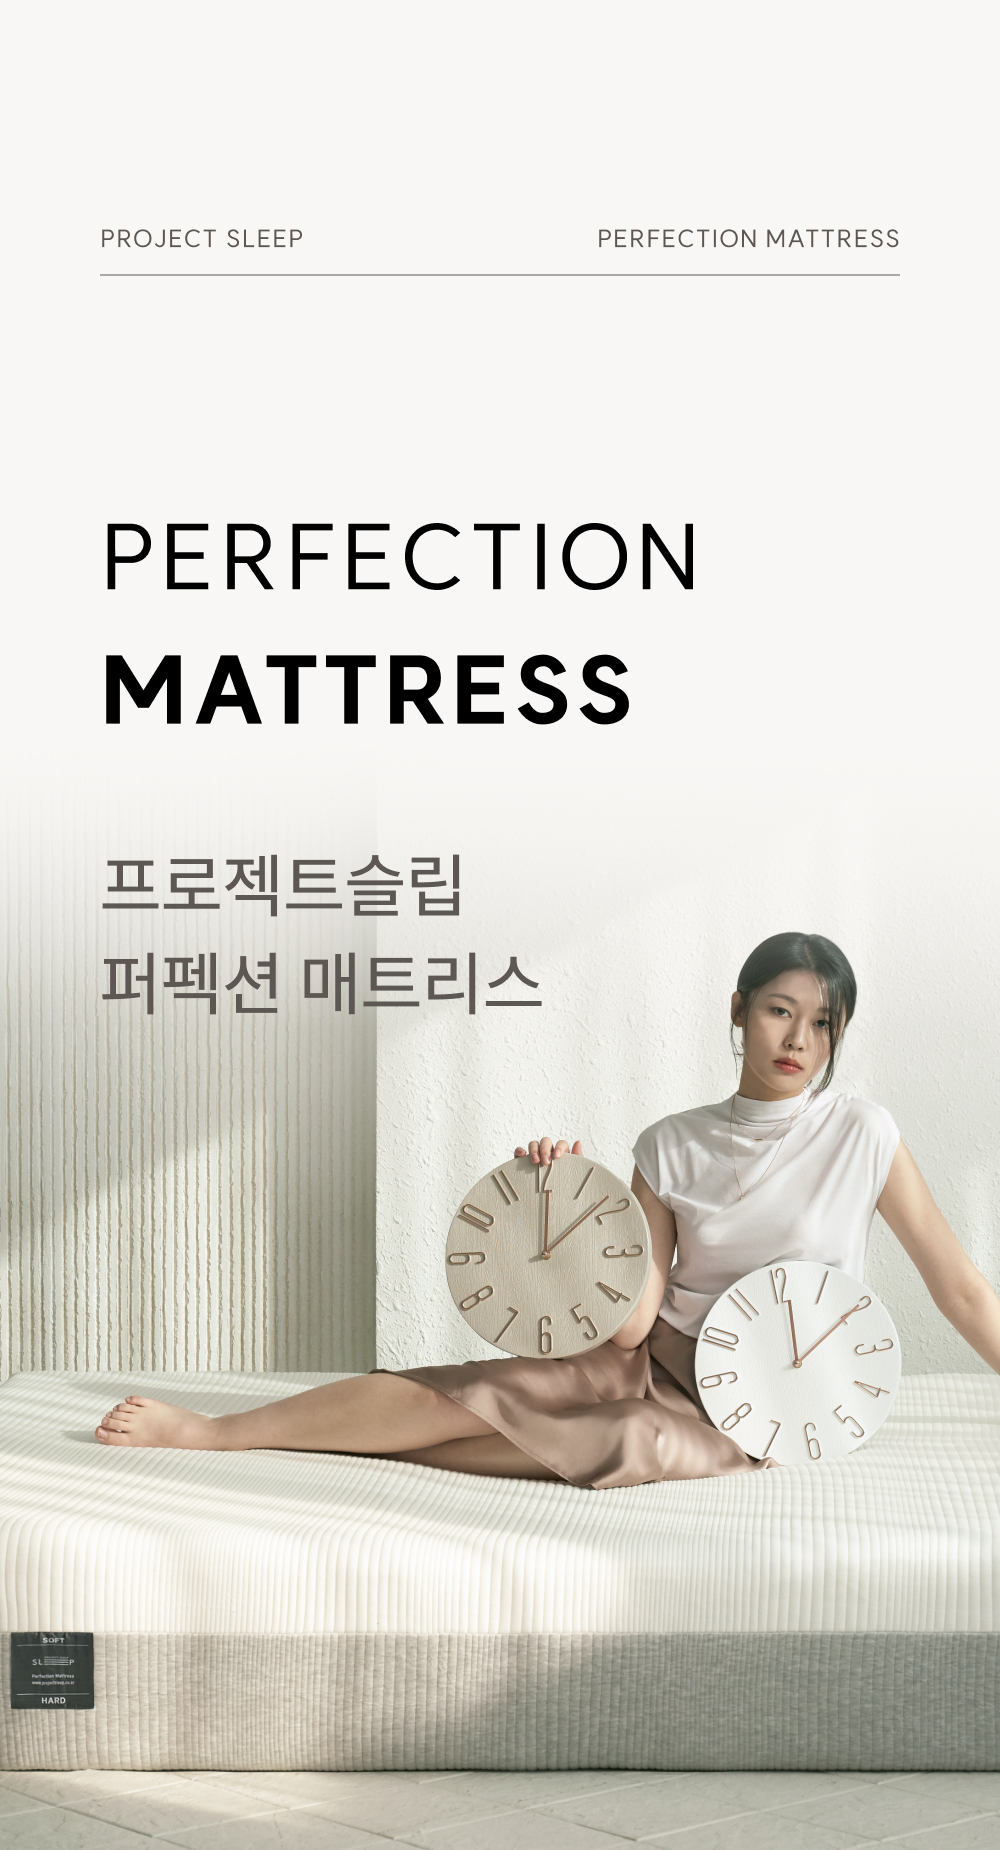 Perfection_mattress_detailpage_01_175604.jpg